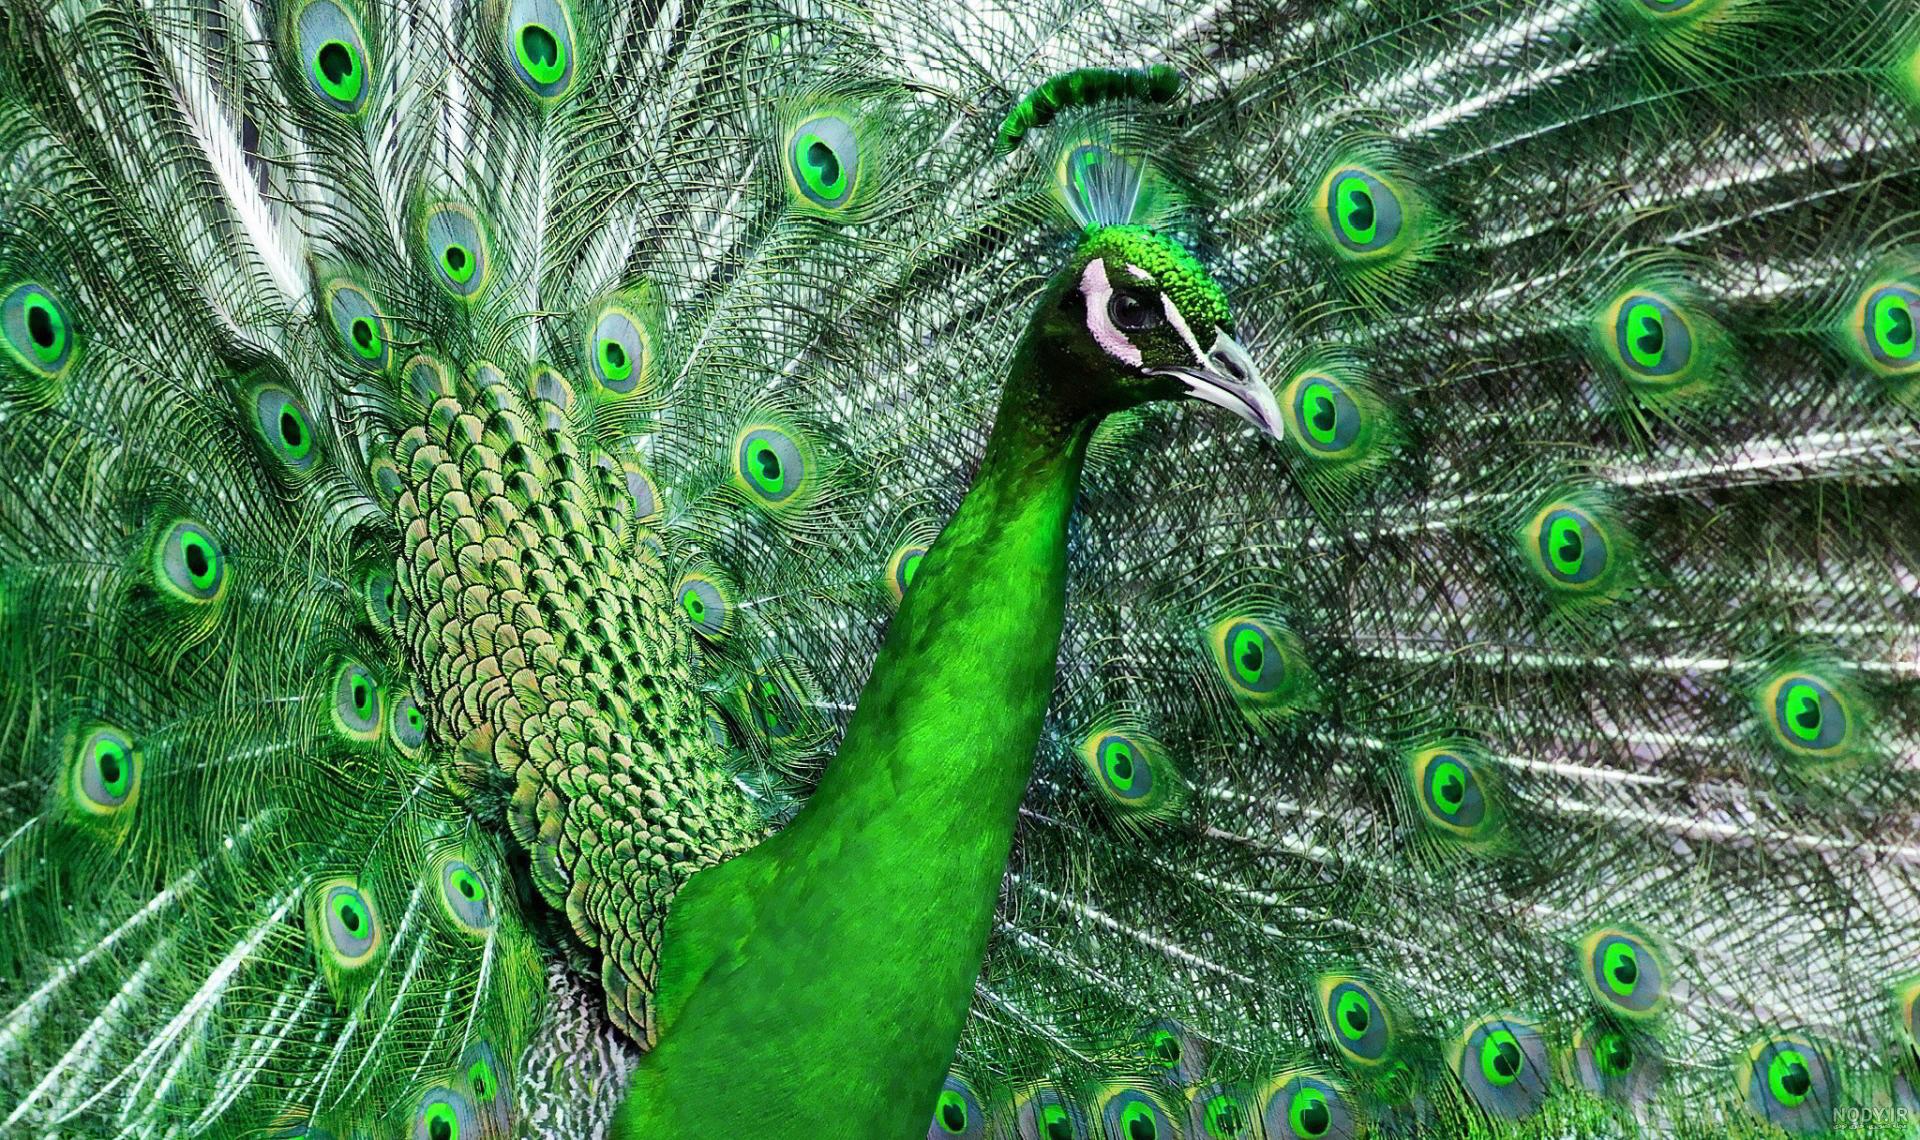 شعر در کنار گلبنی خوش رنگ و بو طاووس زیبا